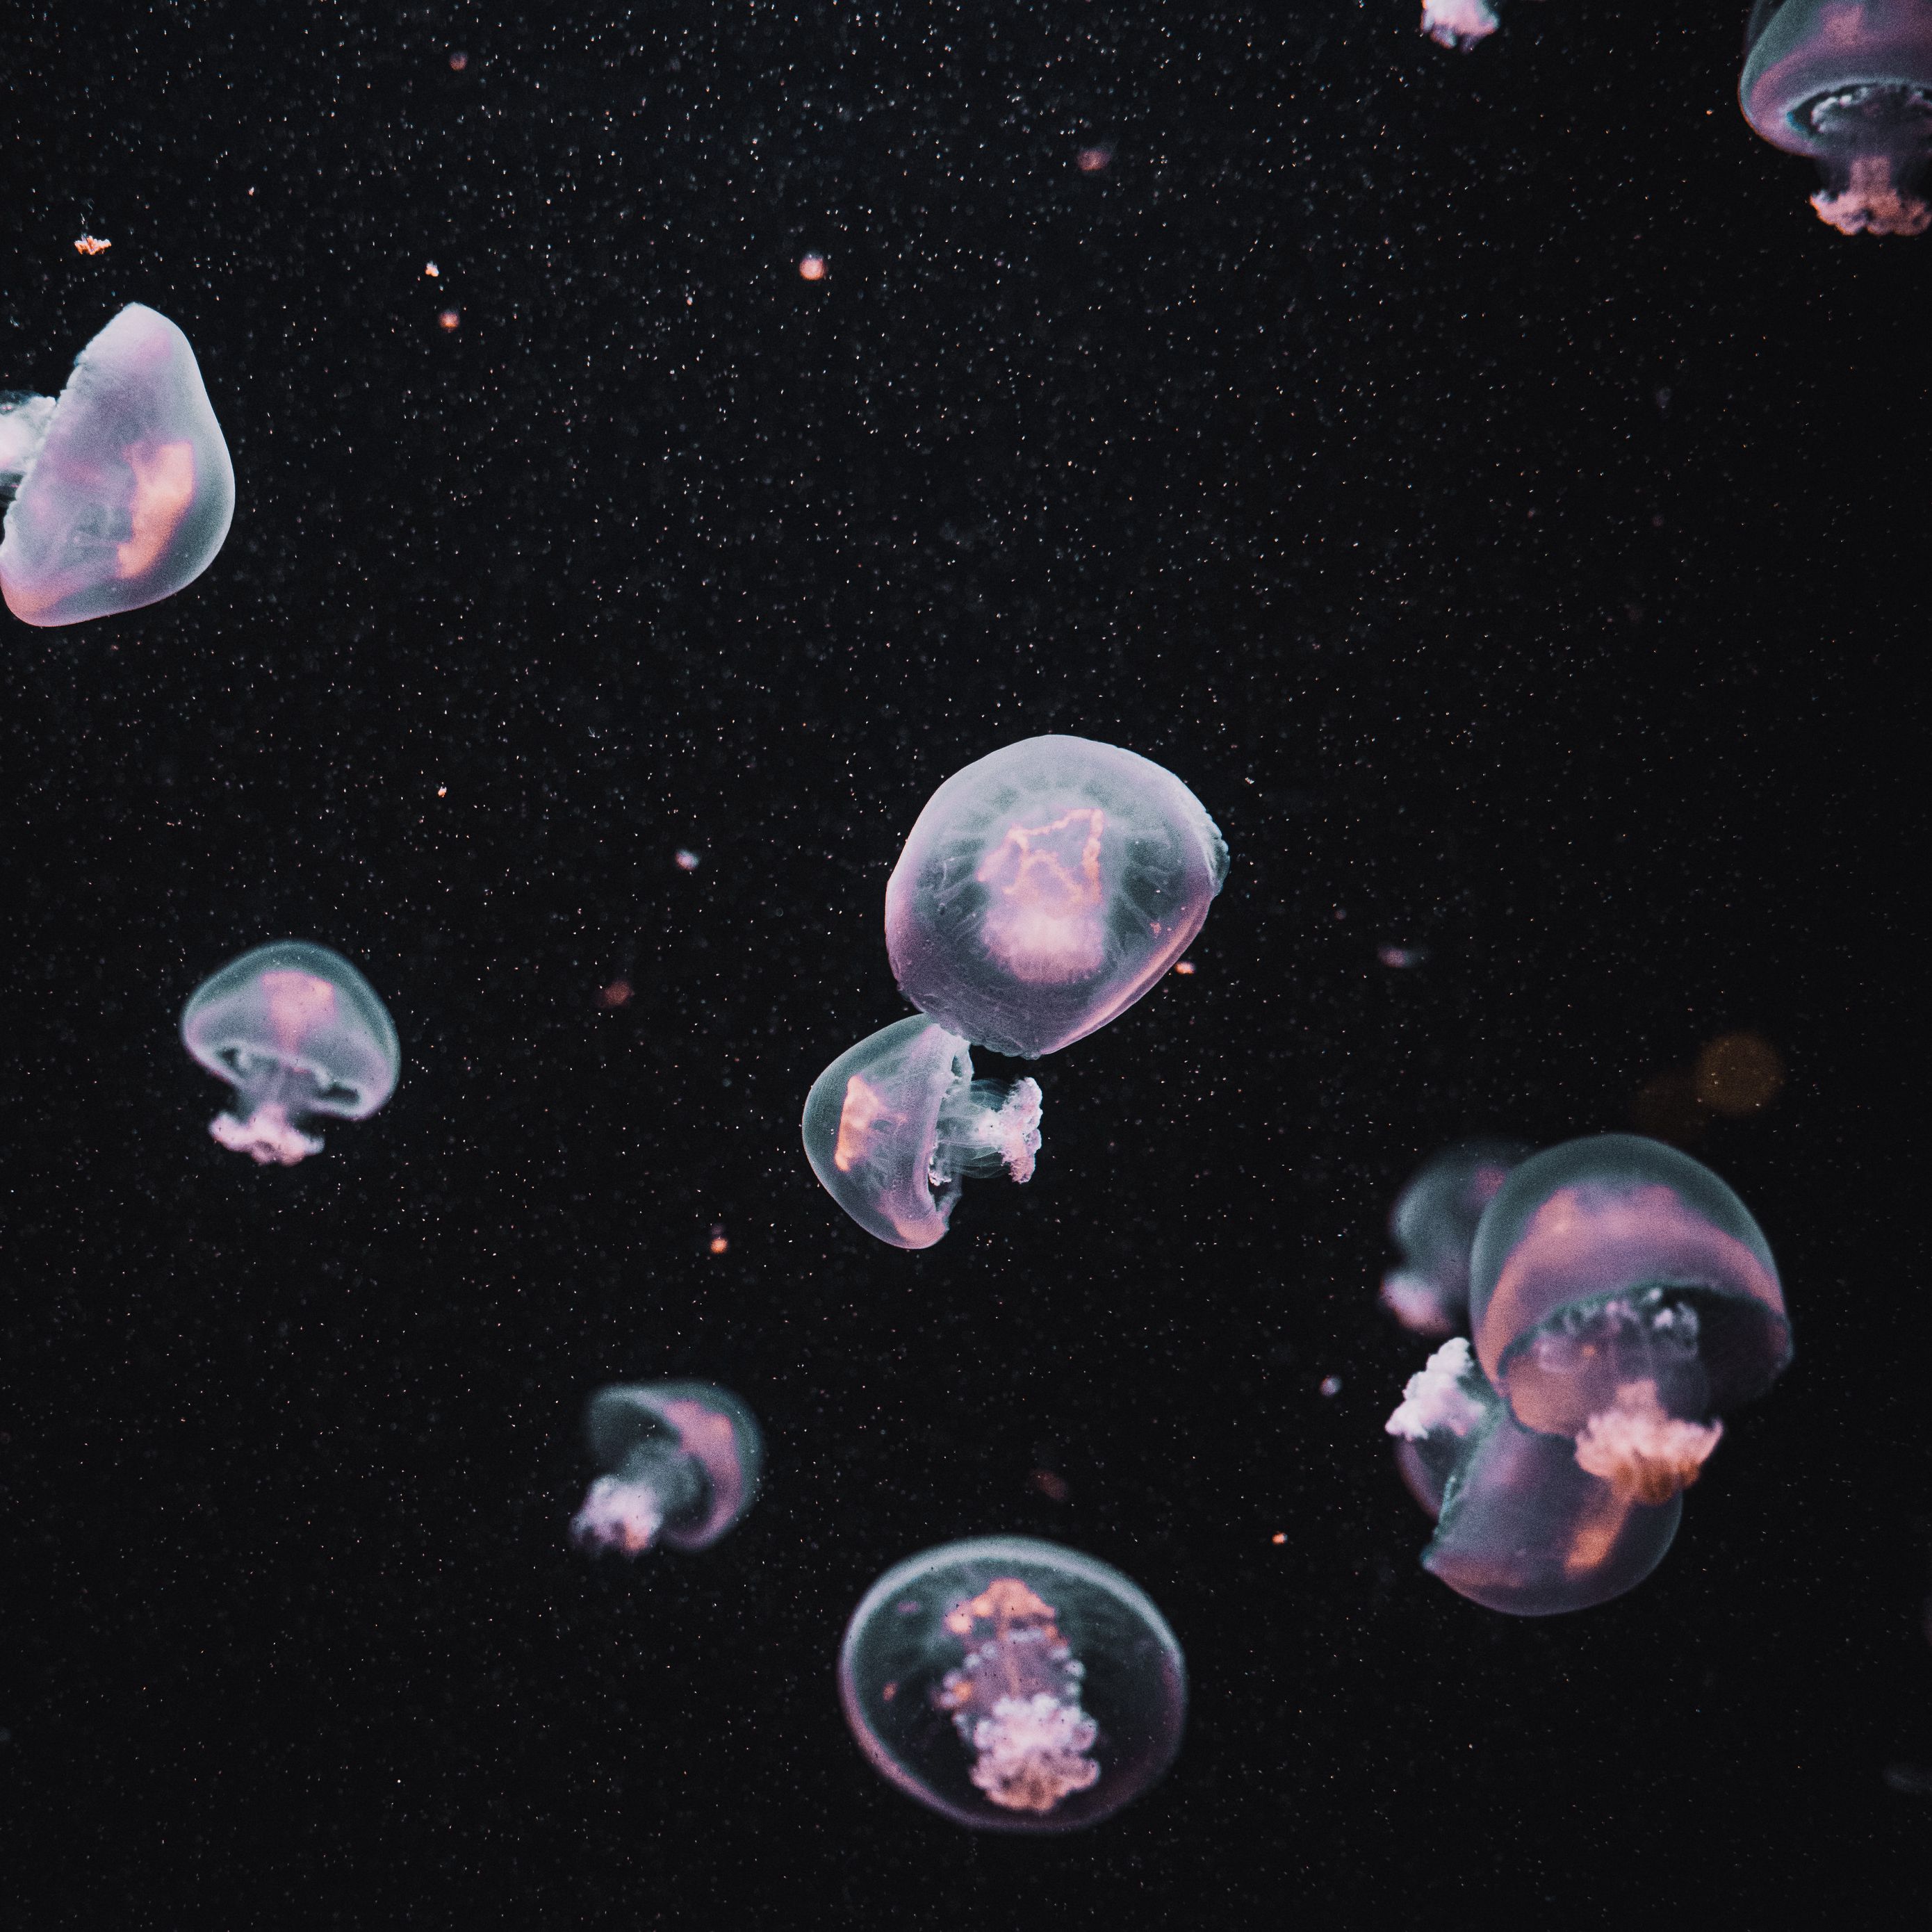 Sứa là một loài sinh vật đầy bí ẩn, sống dưới thế giới đại dương. Cùng nhau ngắm nhìn hình ảnh thế giới dưới nước đầy ma mị và tìm hiểu thêm về những chú sứa lạ màu qua những hình nền tối đầy huyền bí.